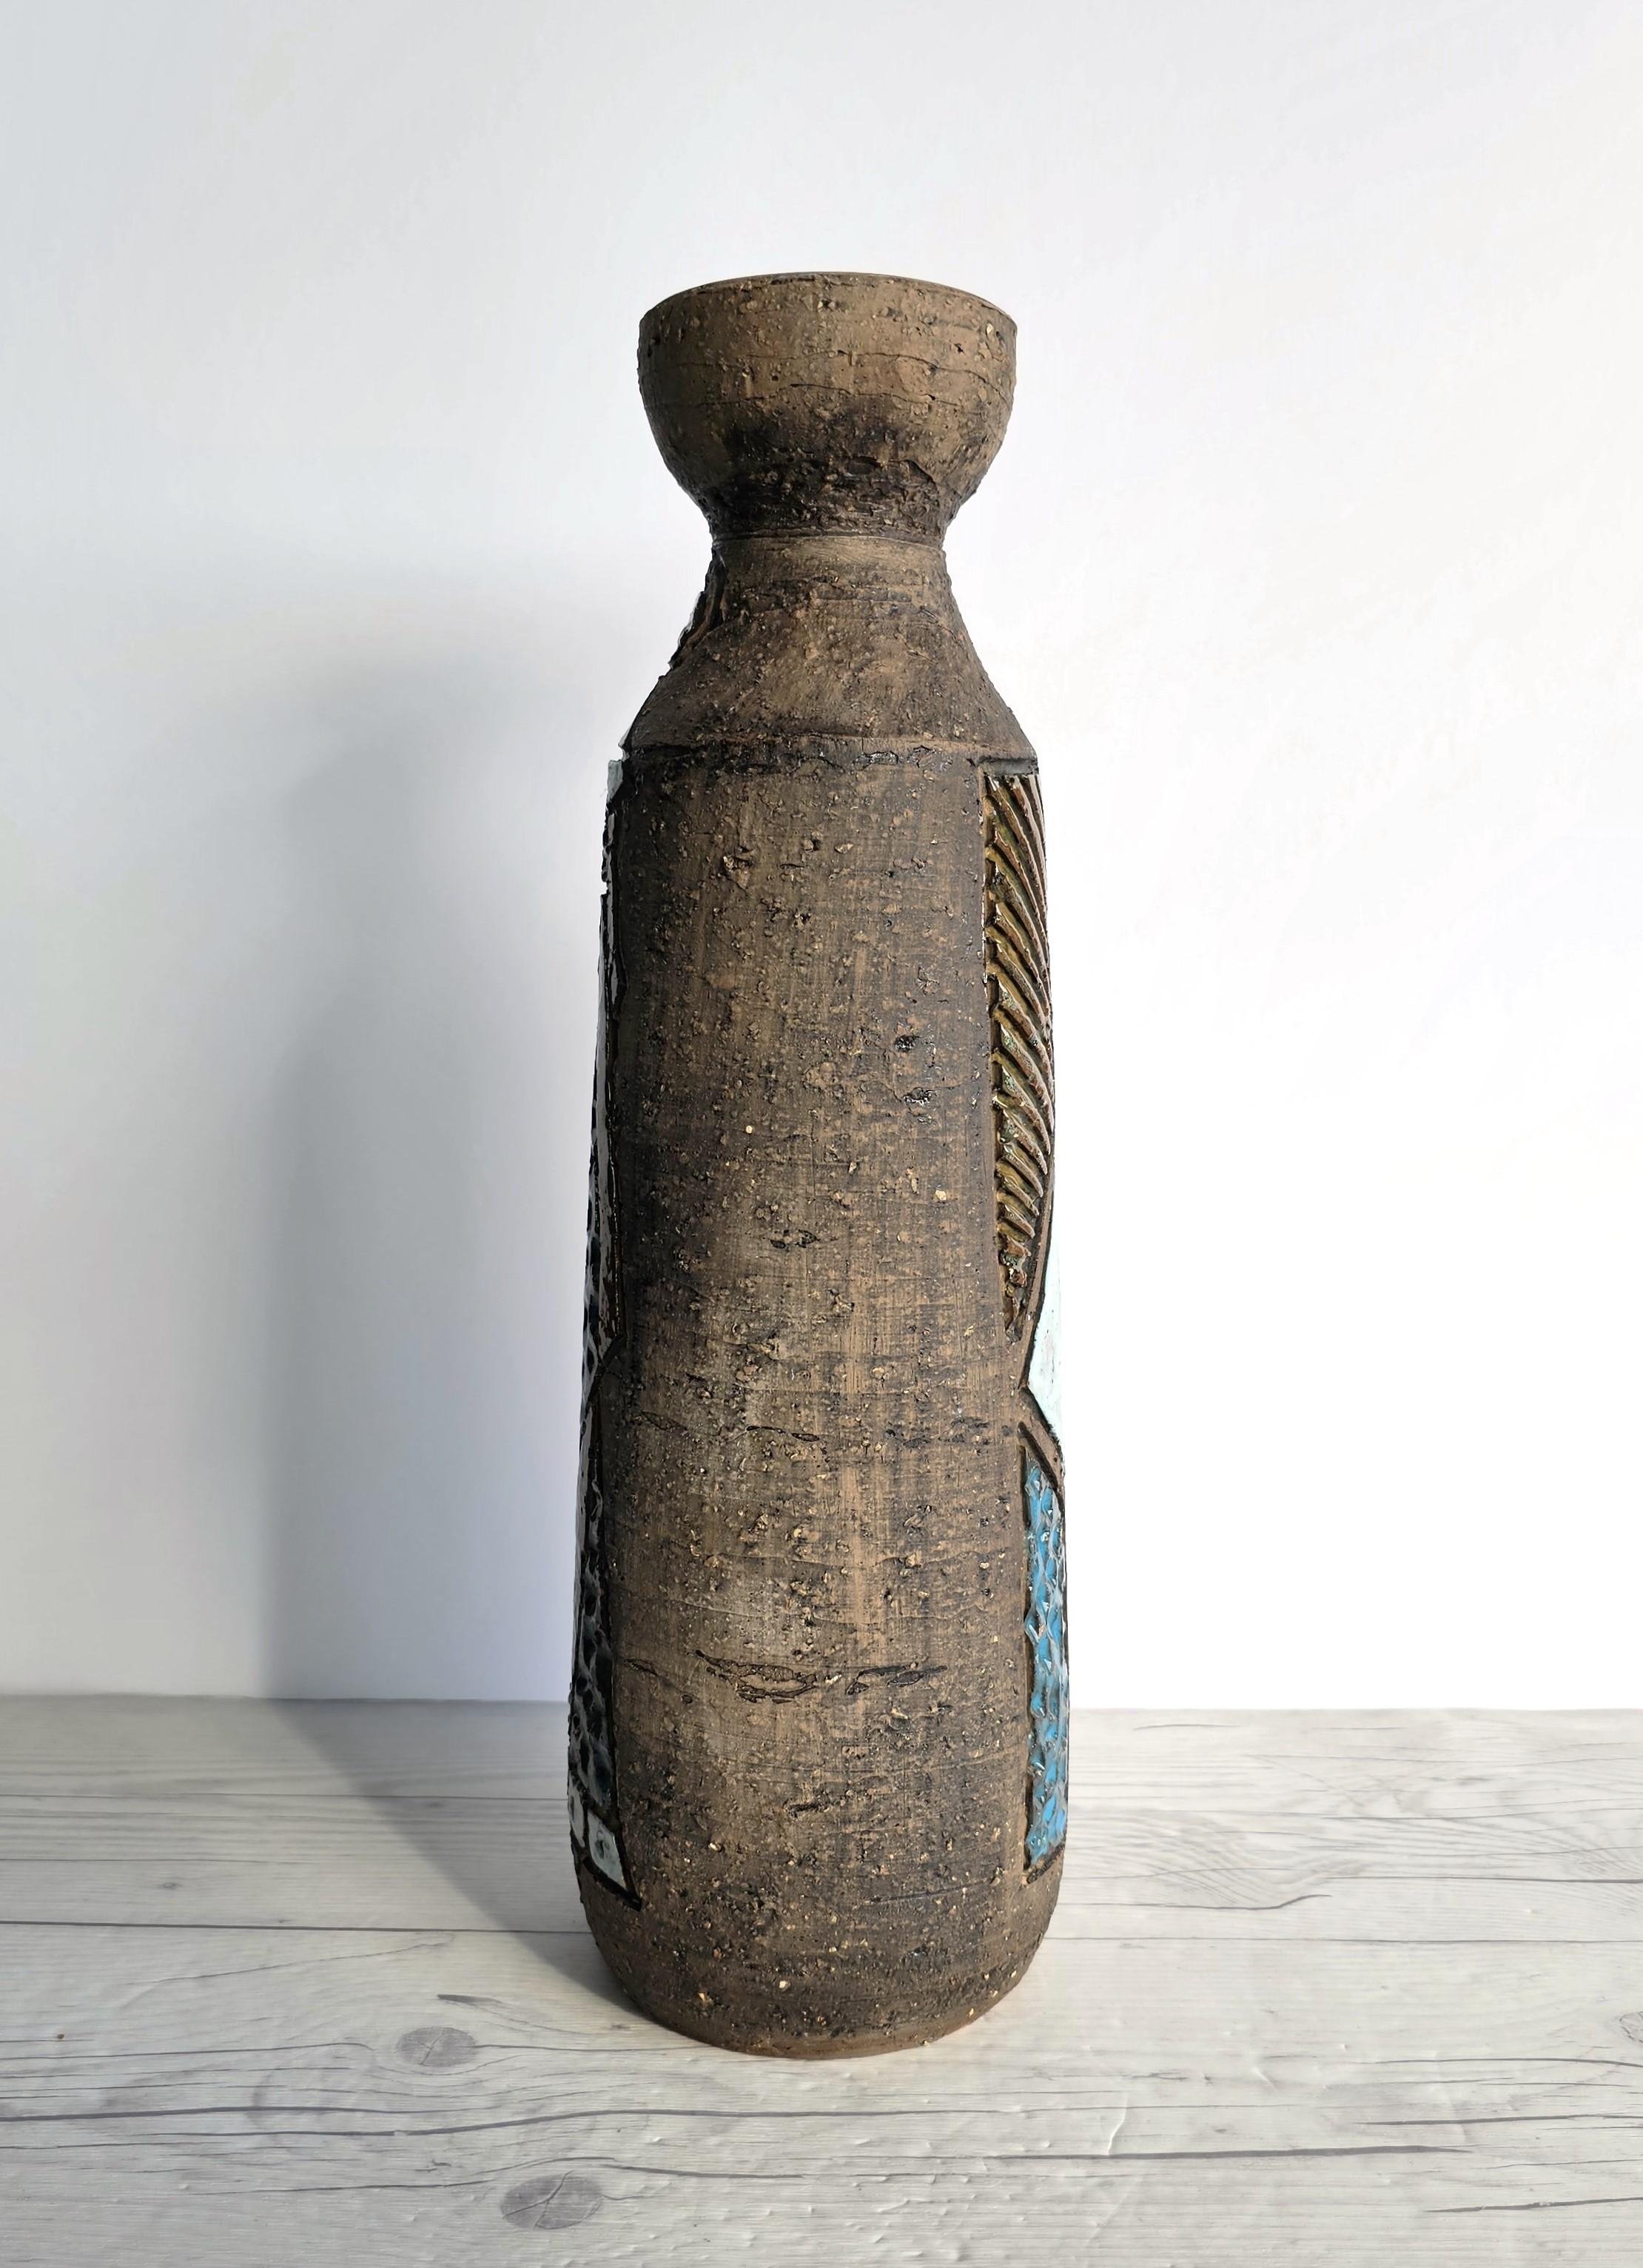 Earthenware Tilgmans Keramik, Swedish Midcentury Modernist Sgraffito Sculptural Bottle Vase For Sale